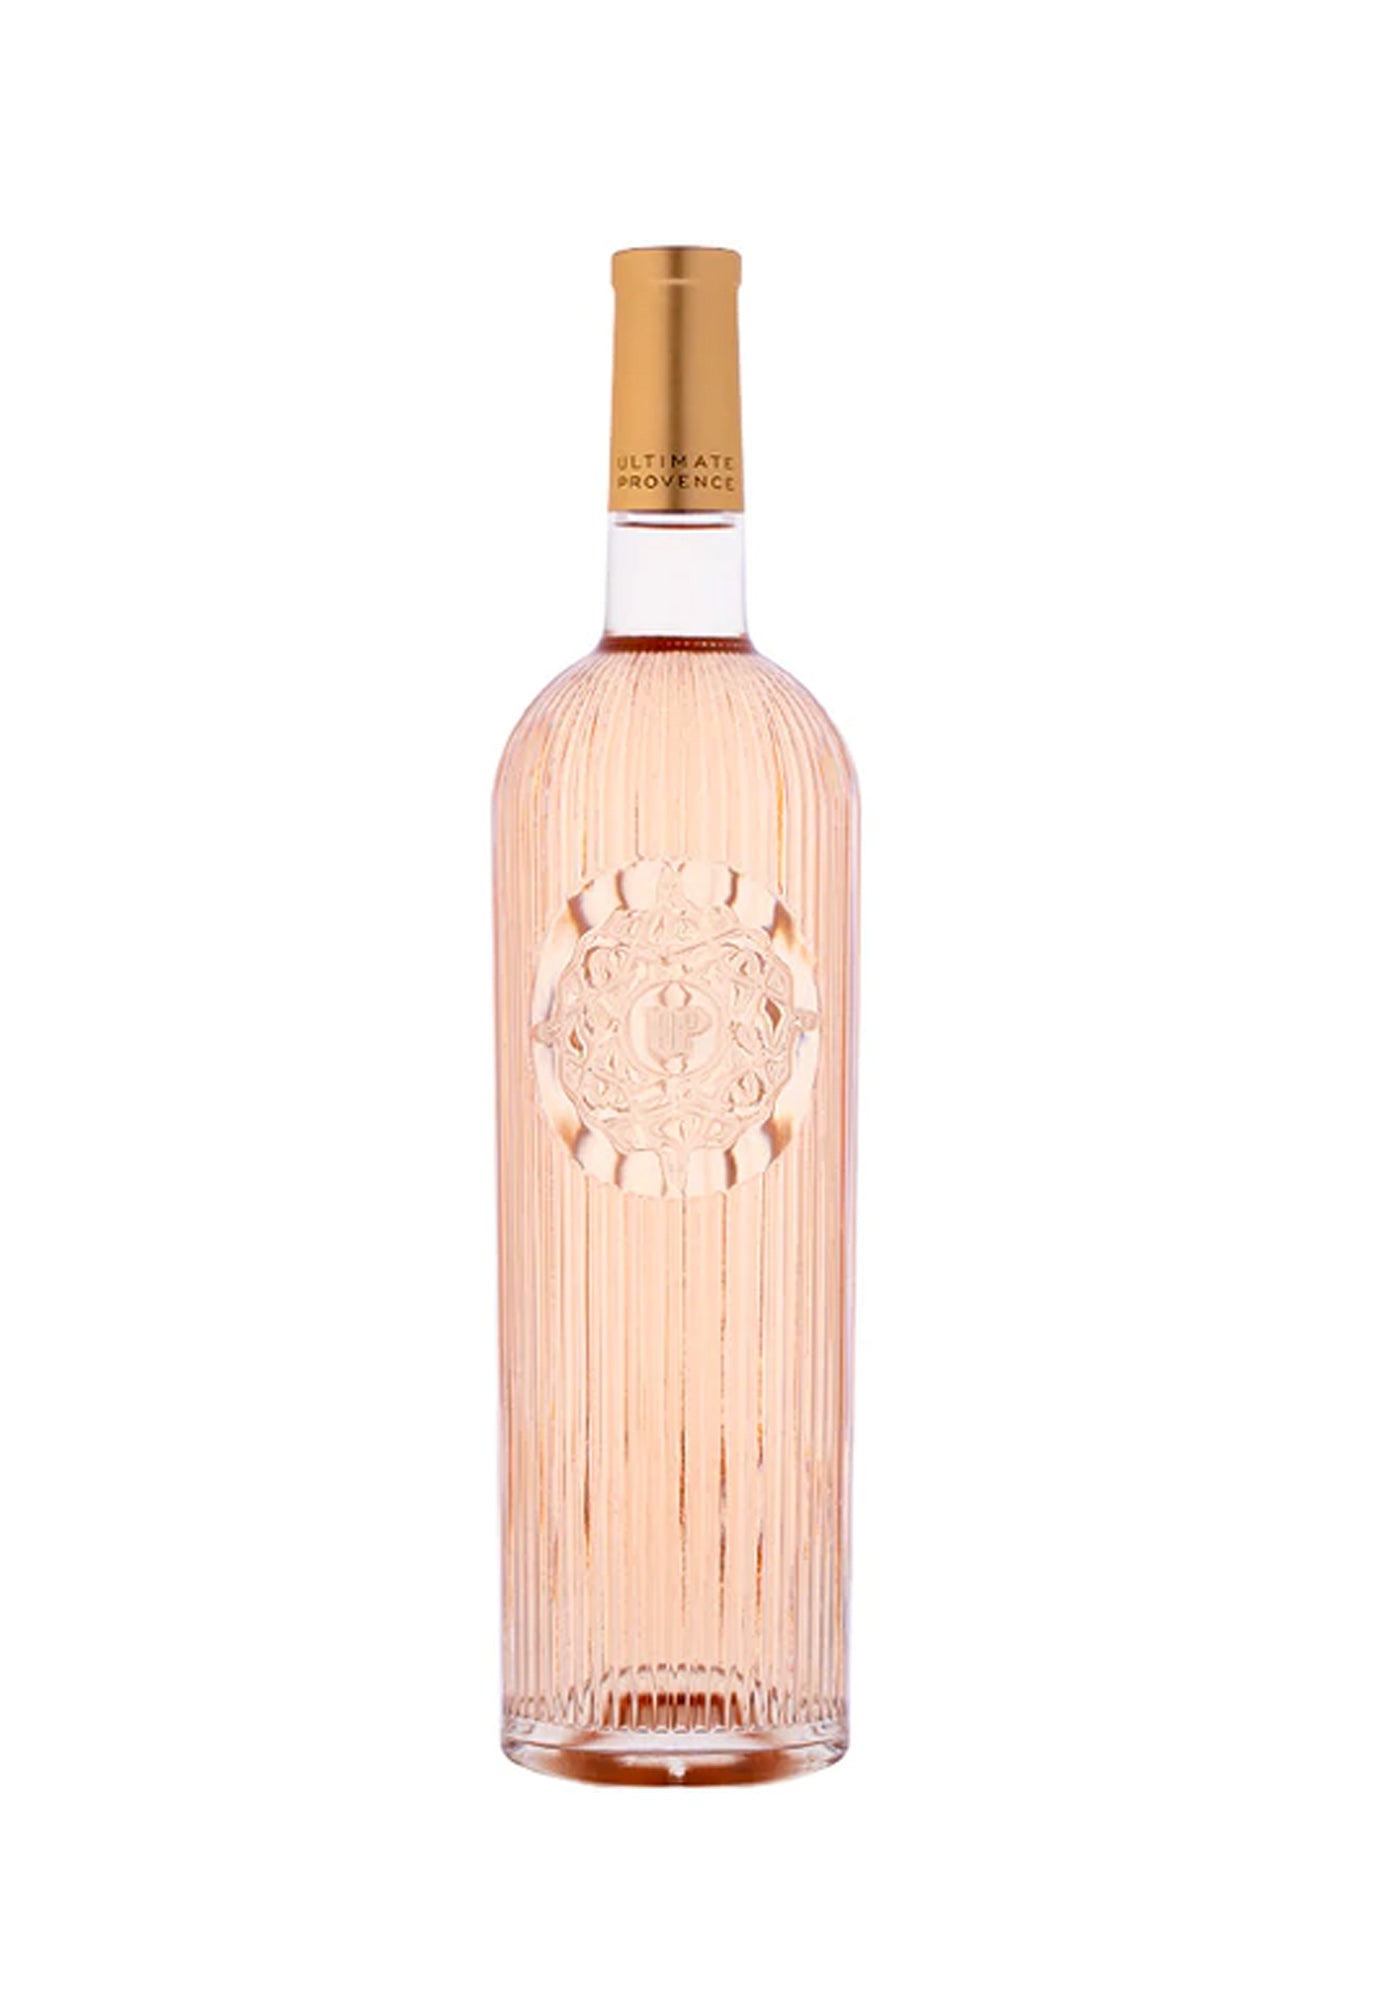 Ultimate Provence Rose 2019 - 1.5 Litre Bottle